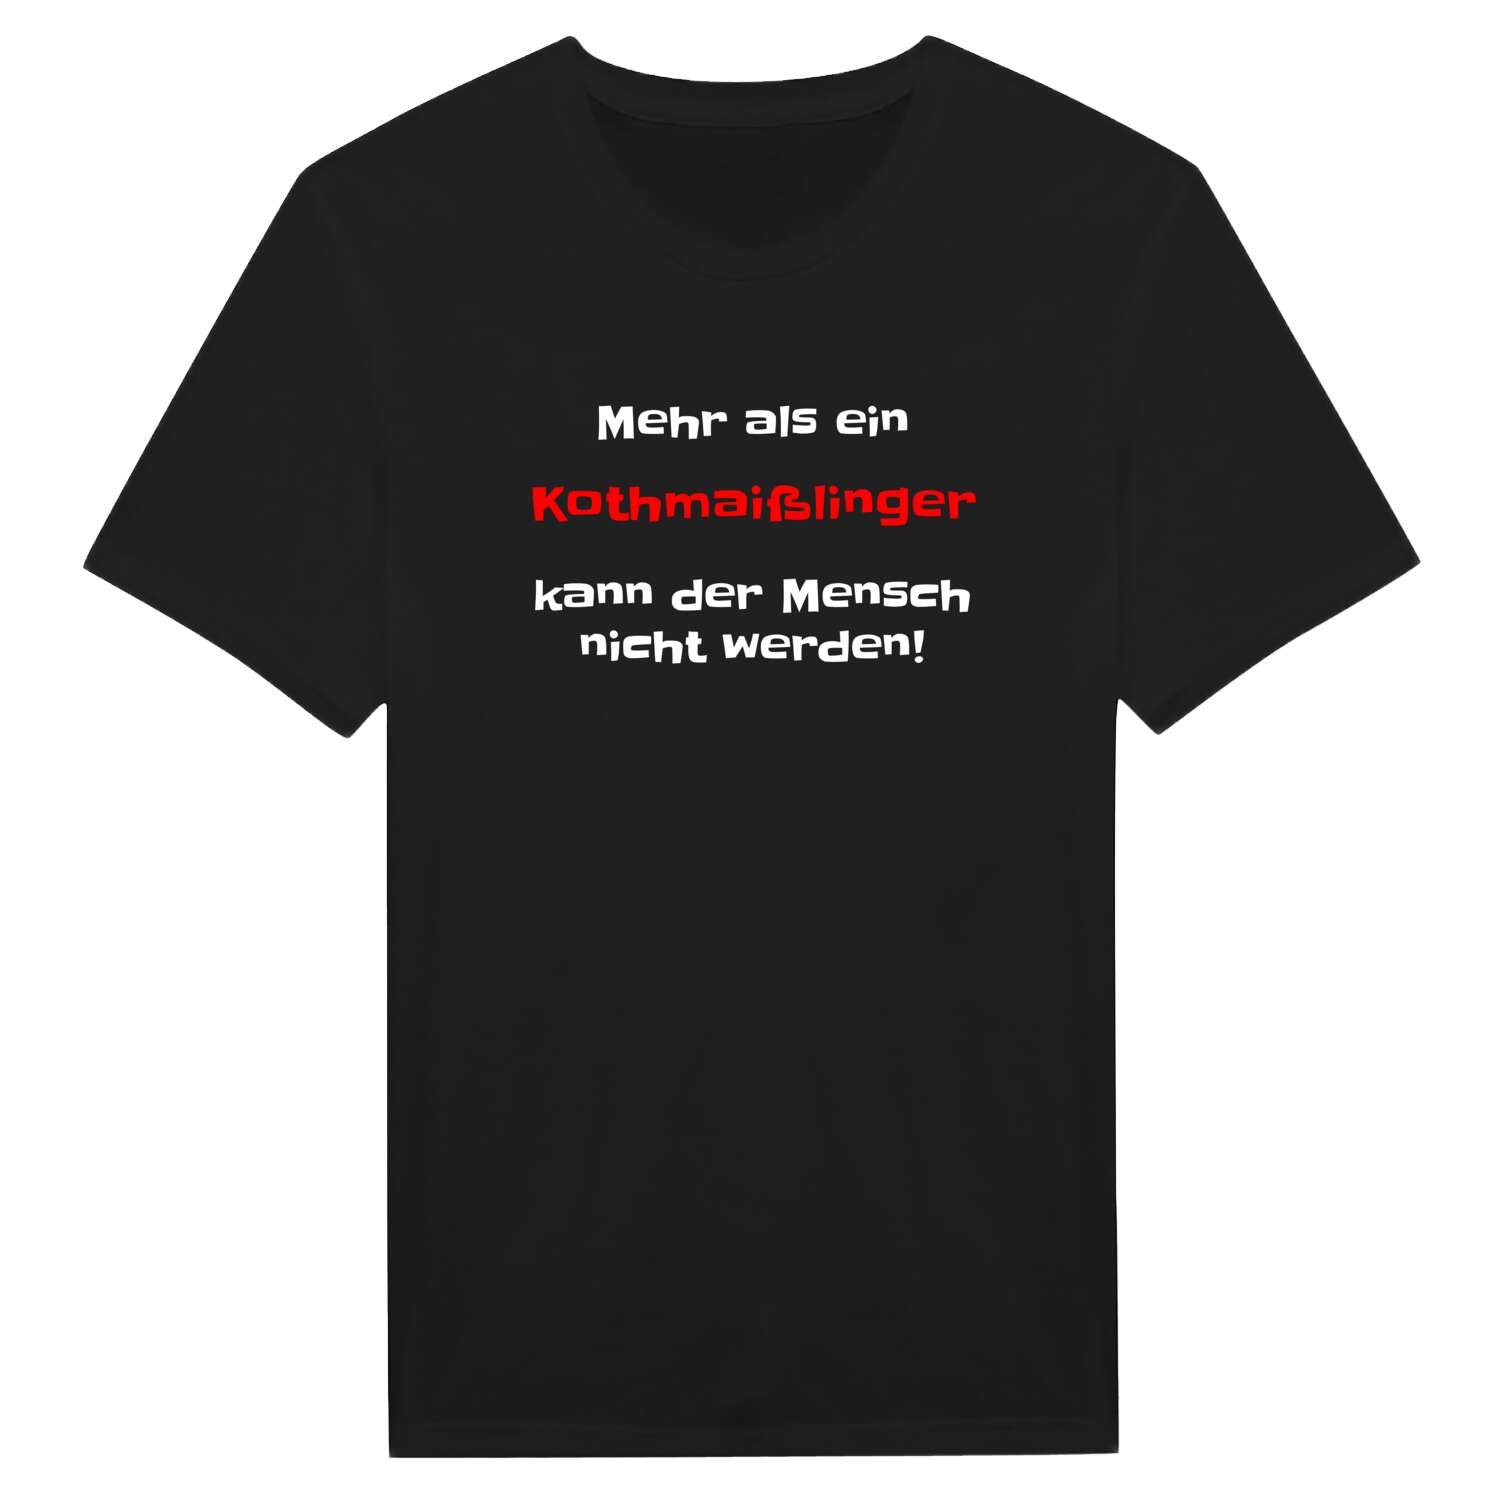 Kothmaißling T-Shirt »Mehr als ein«